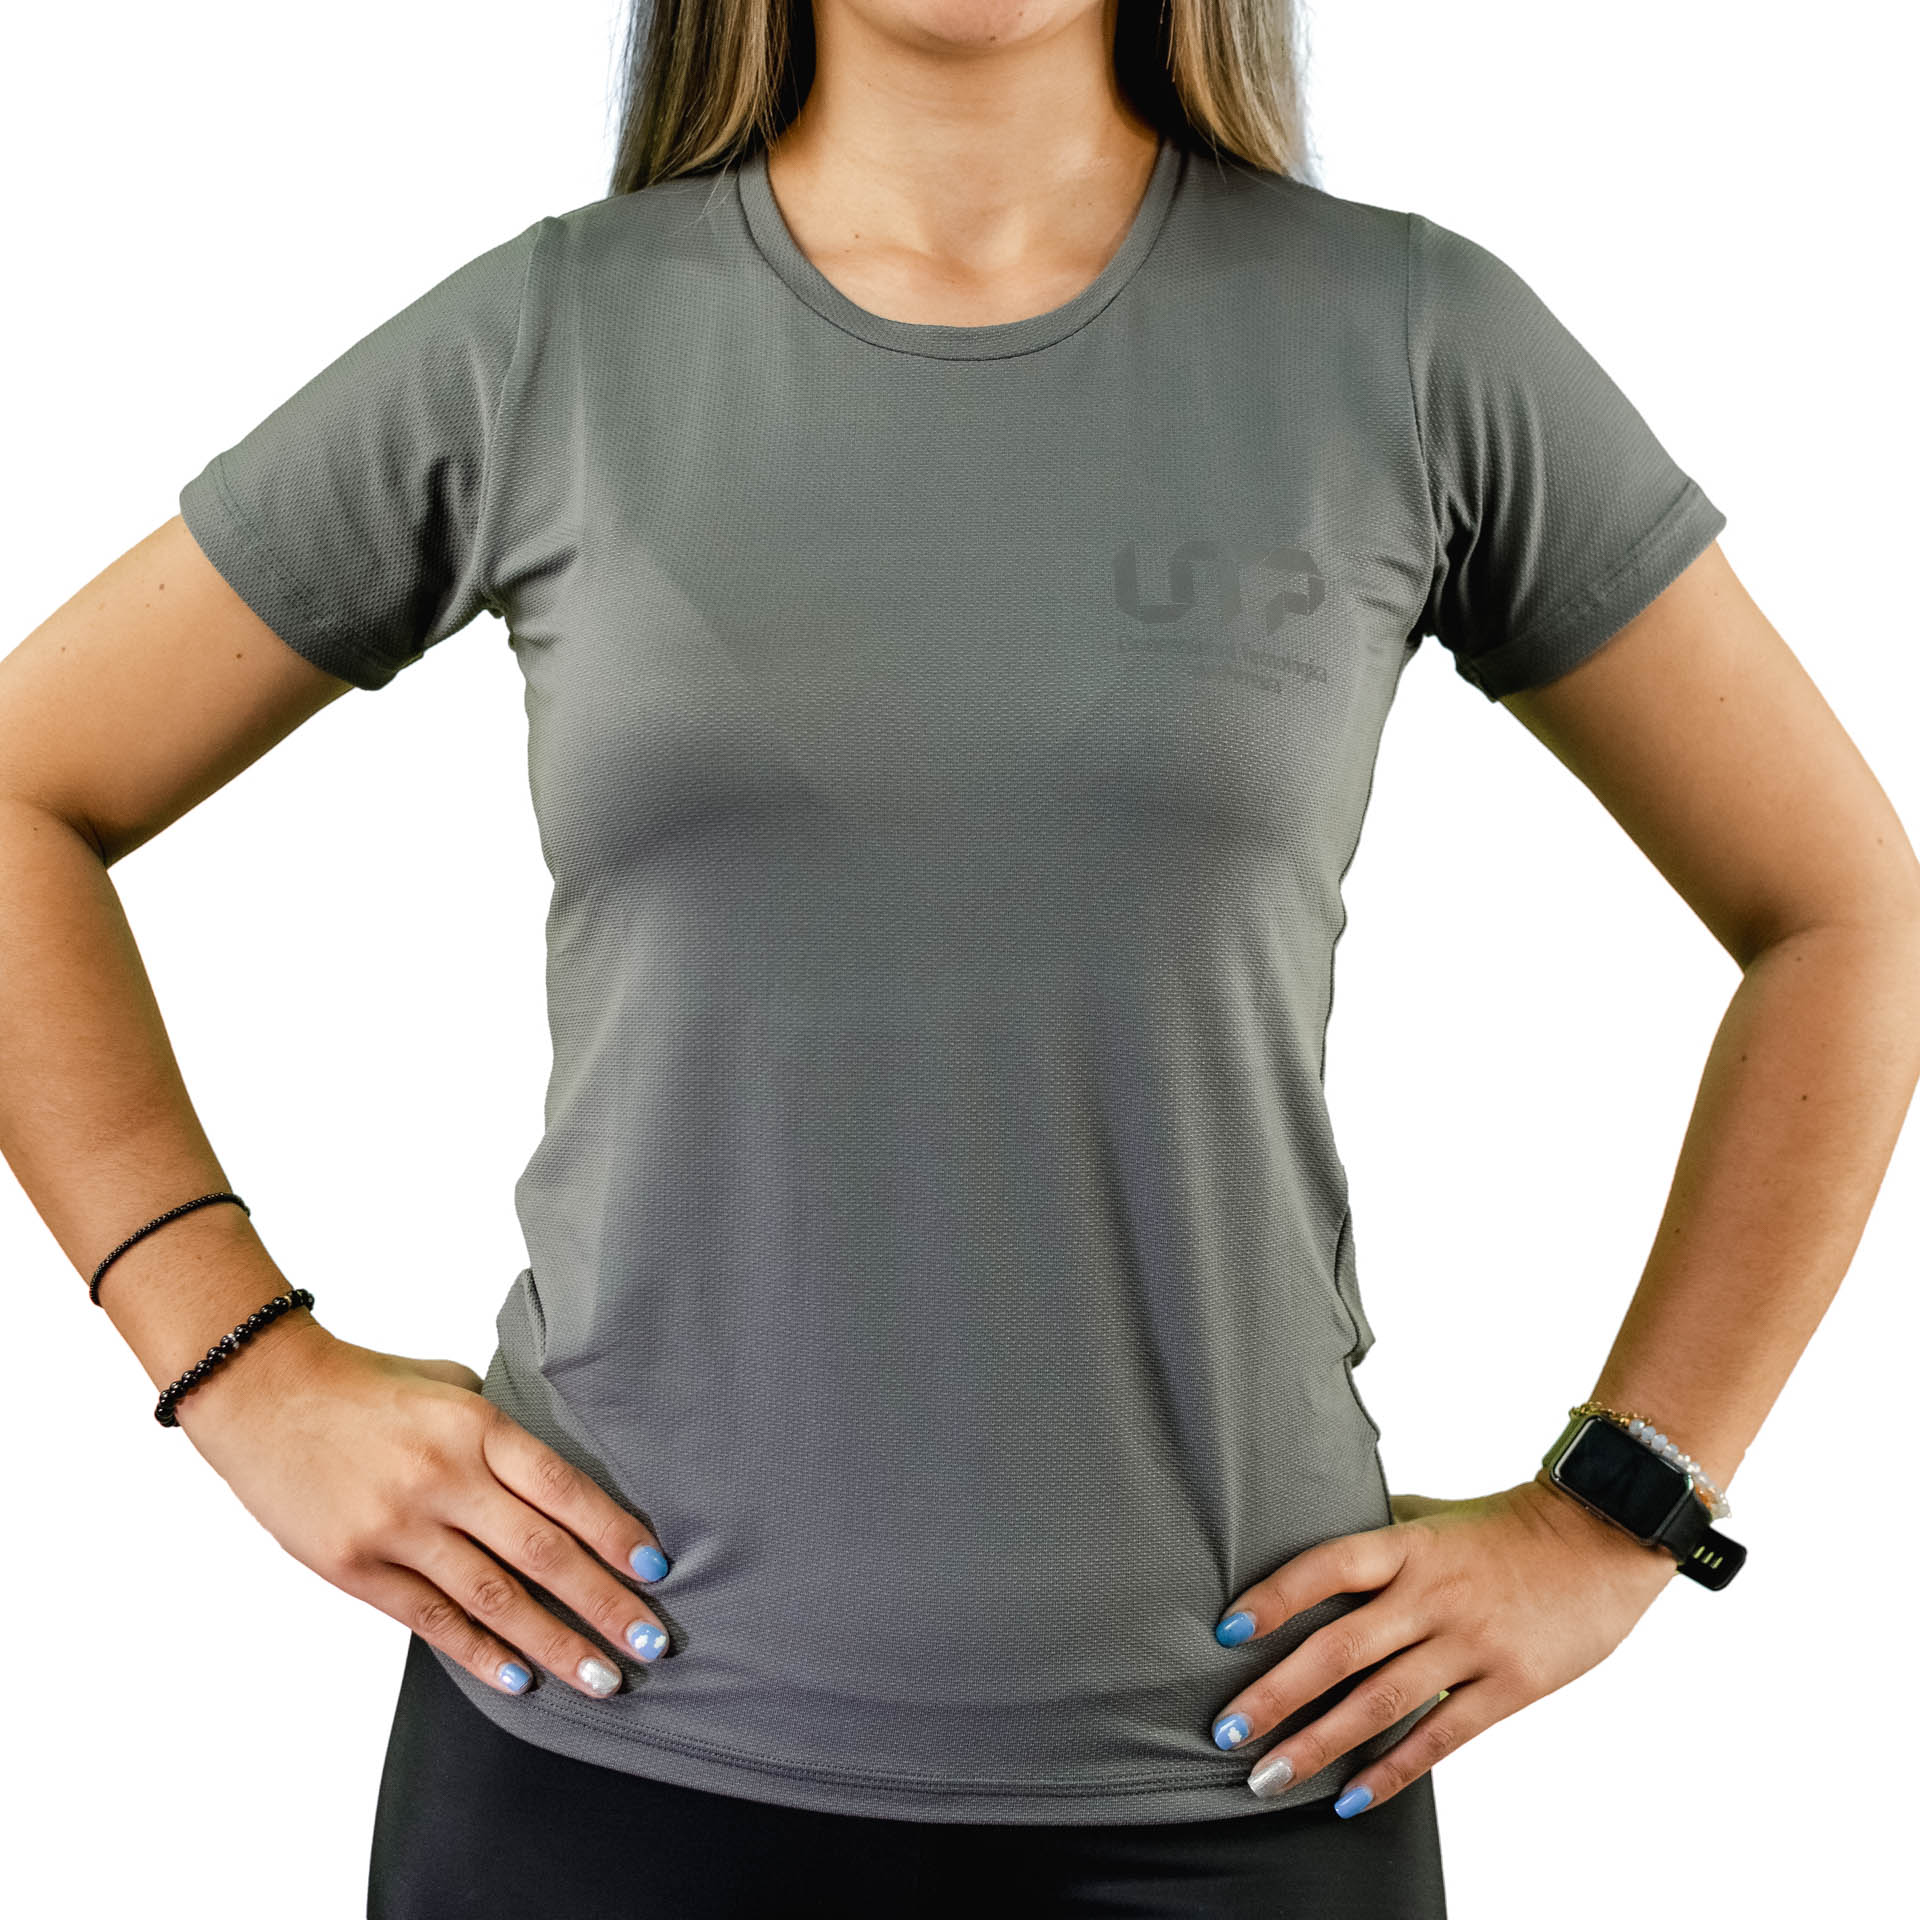 Camiseta gym mujer – Tienda UTP